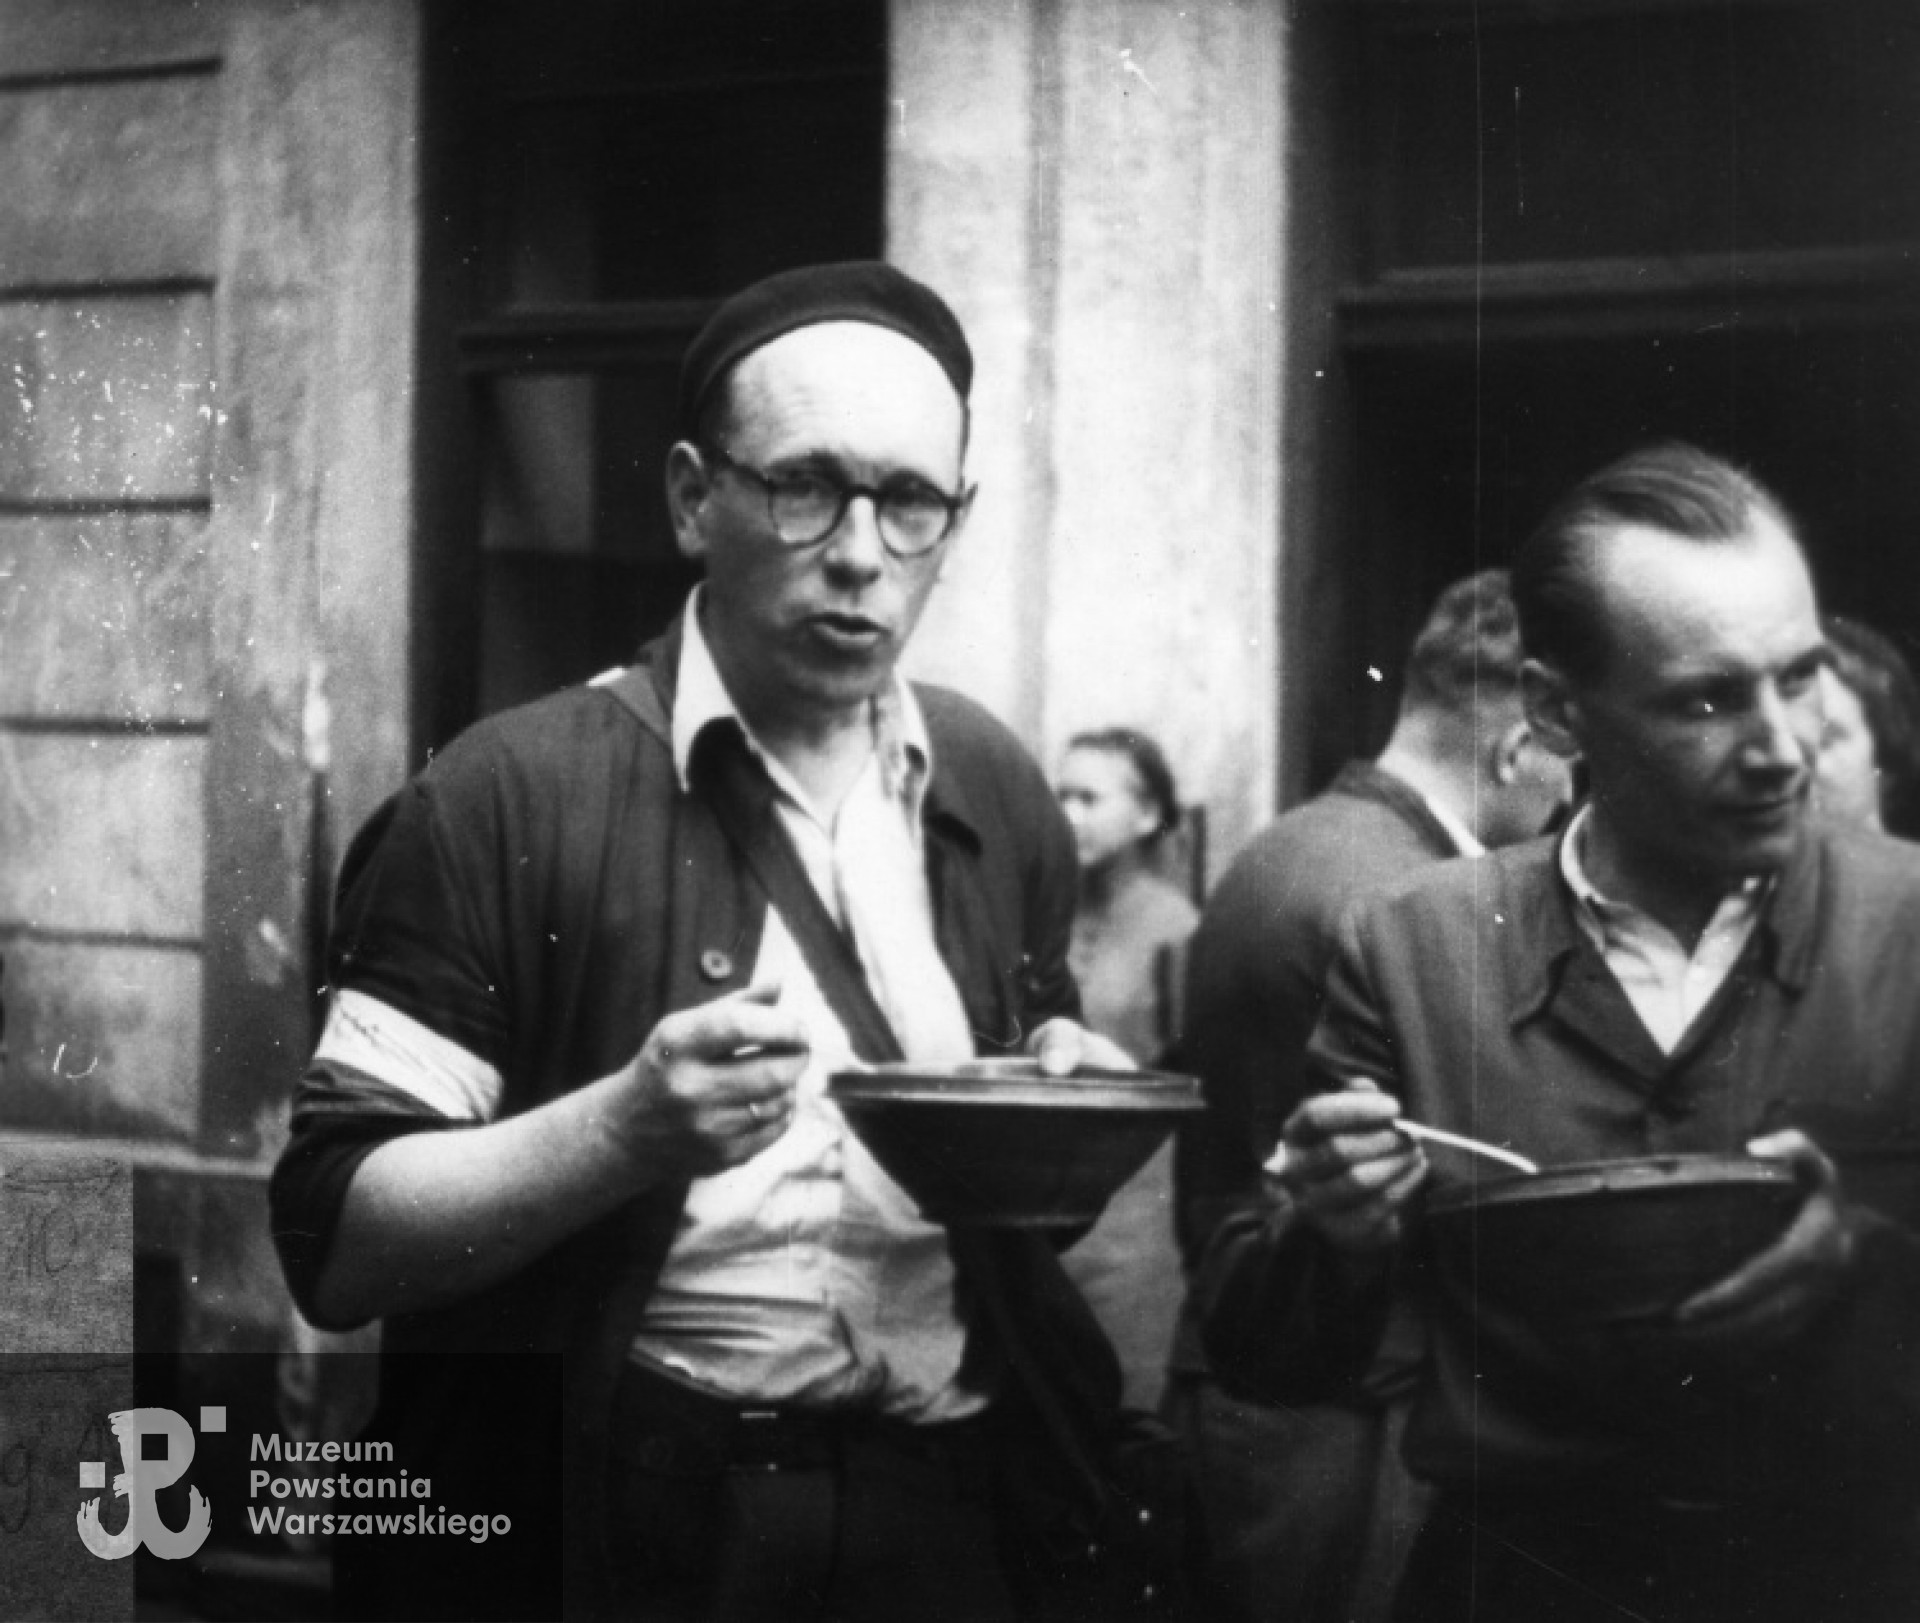 Śródmieście Północne. Powstańcza stołówka przy ul. Szpitalnej 8. Operator Henryk Vlassak (po lewej) podczas spożywania posiłku, prawdopodobnie sierpień 1944 r. Ze zbiorów Muzeum Powstania warszawskiego.